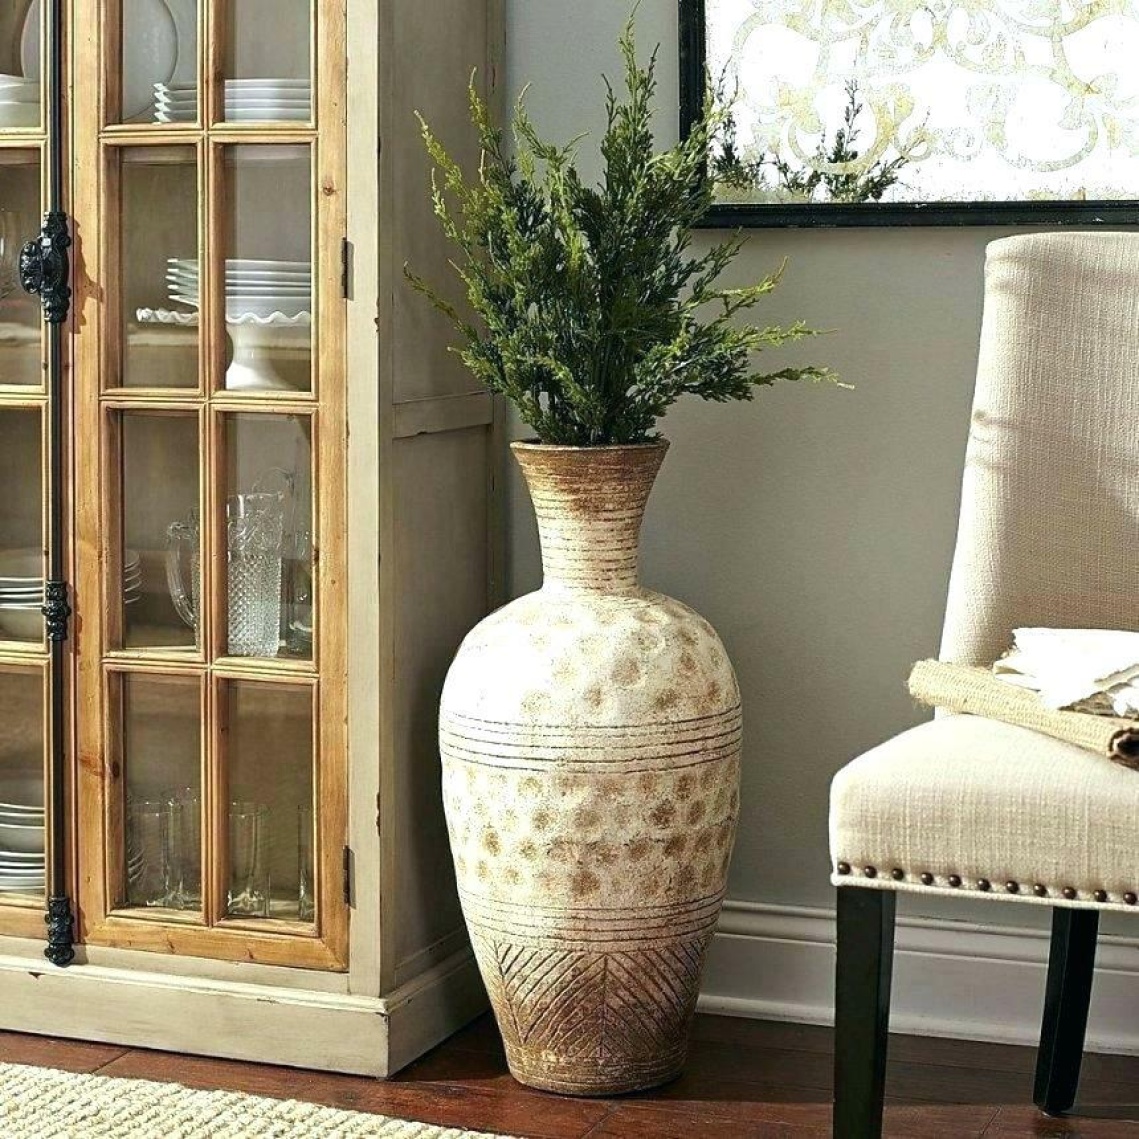 Как украсить интерьер квартиры вазами